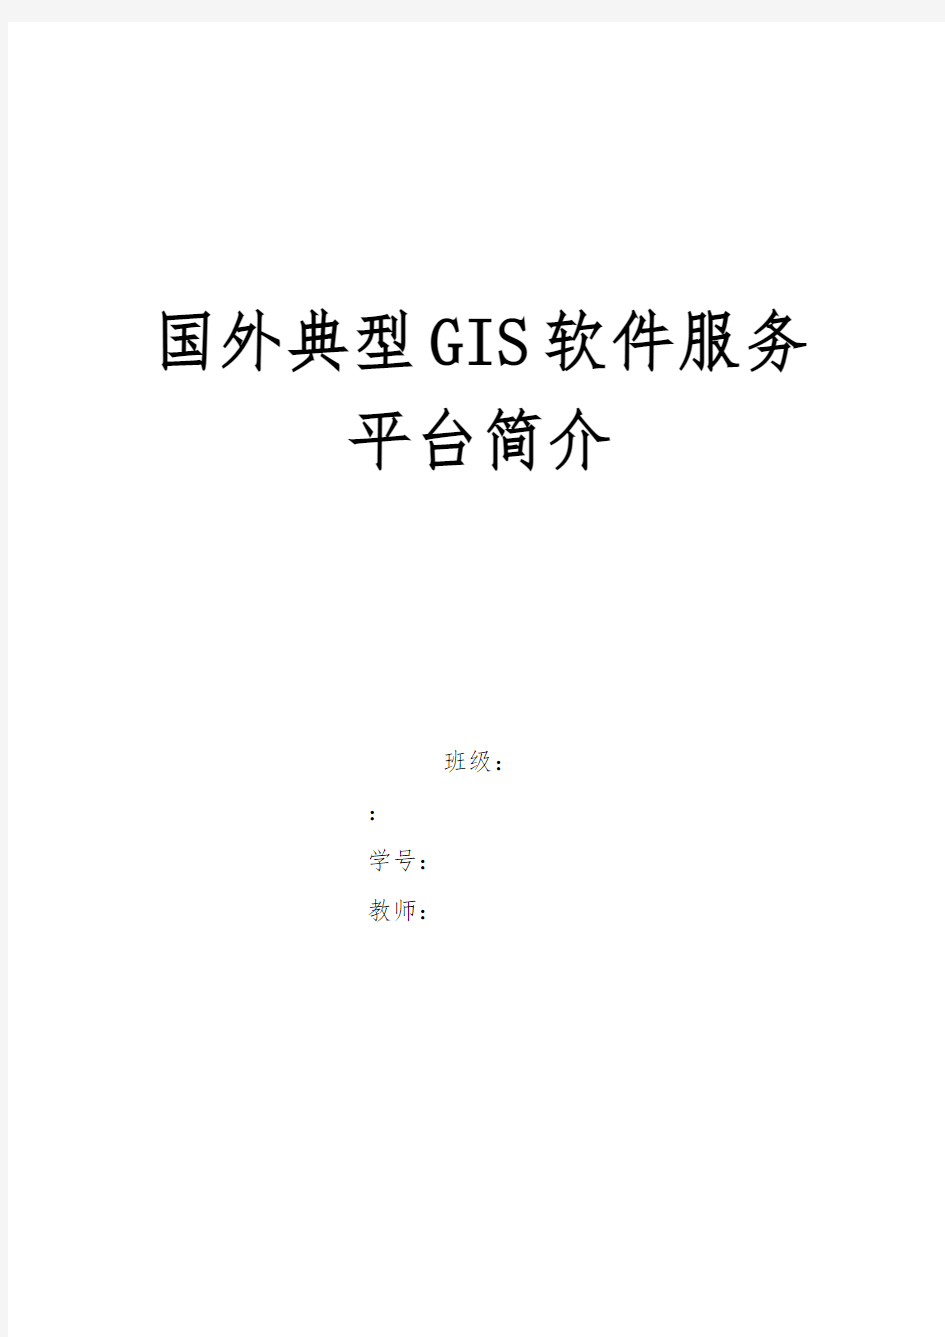 国内外典型GIS应用平台